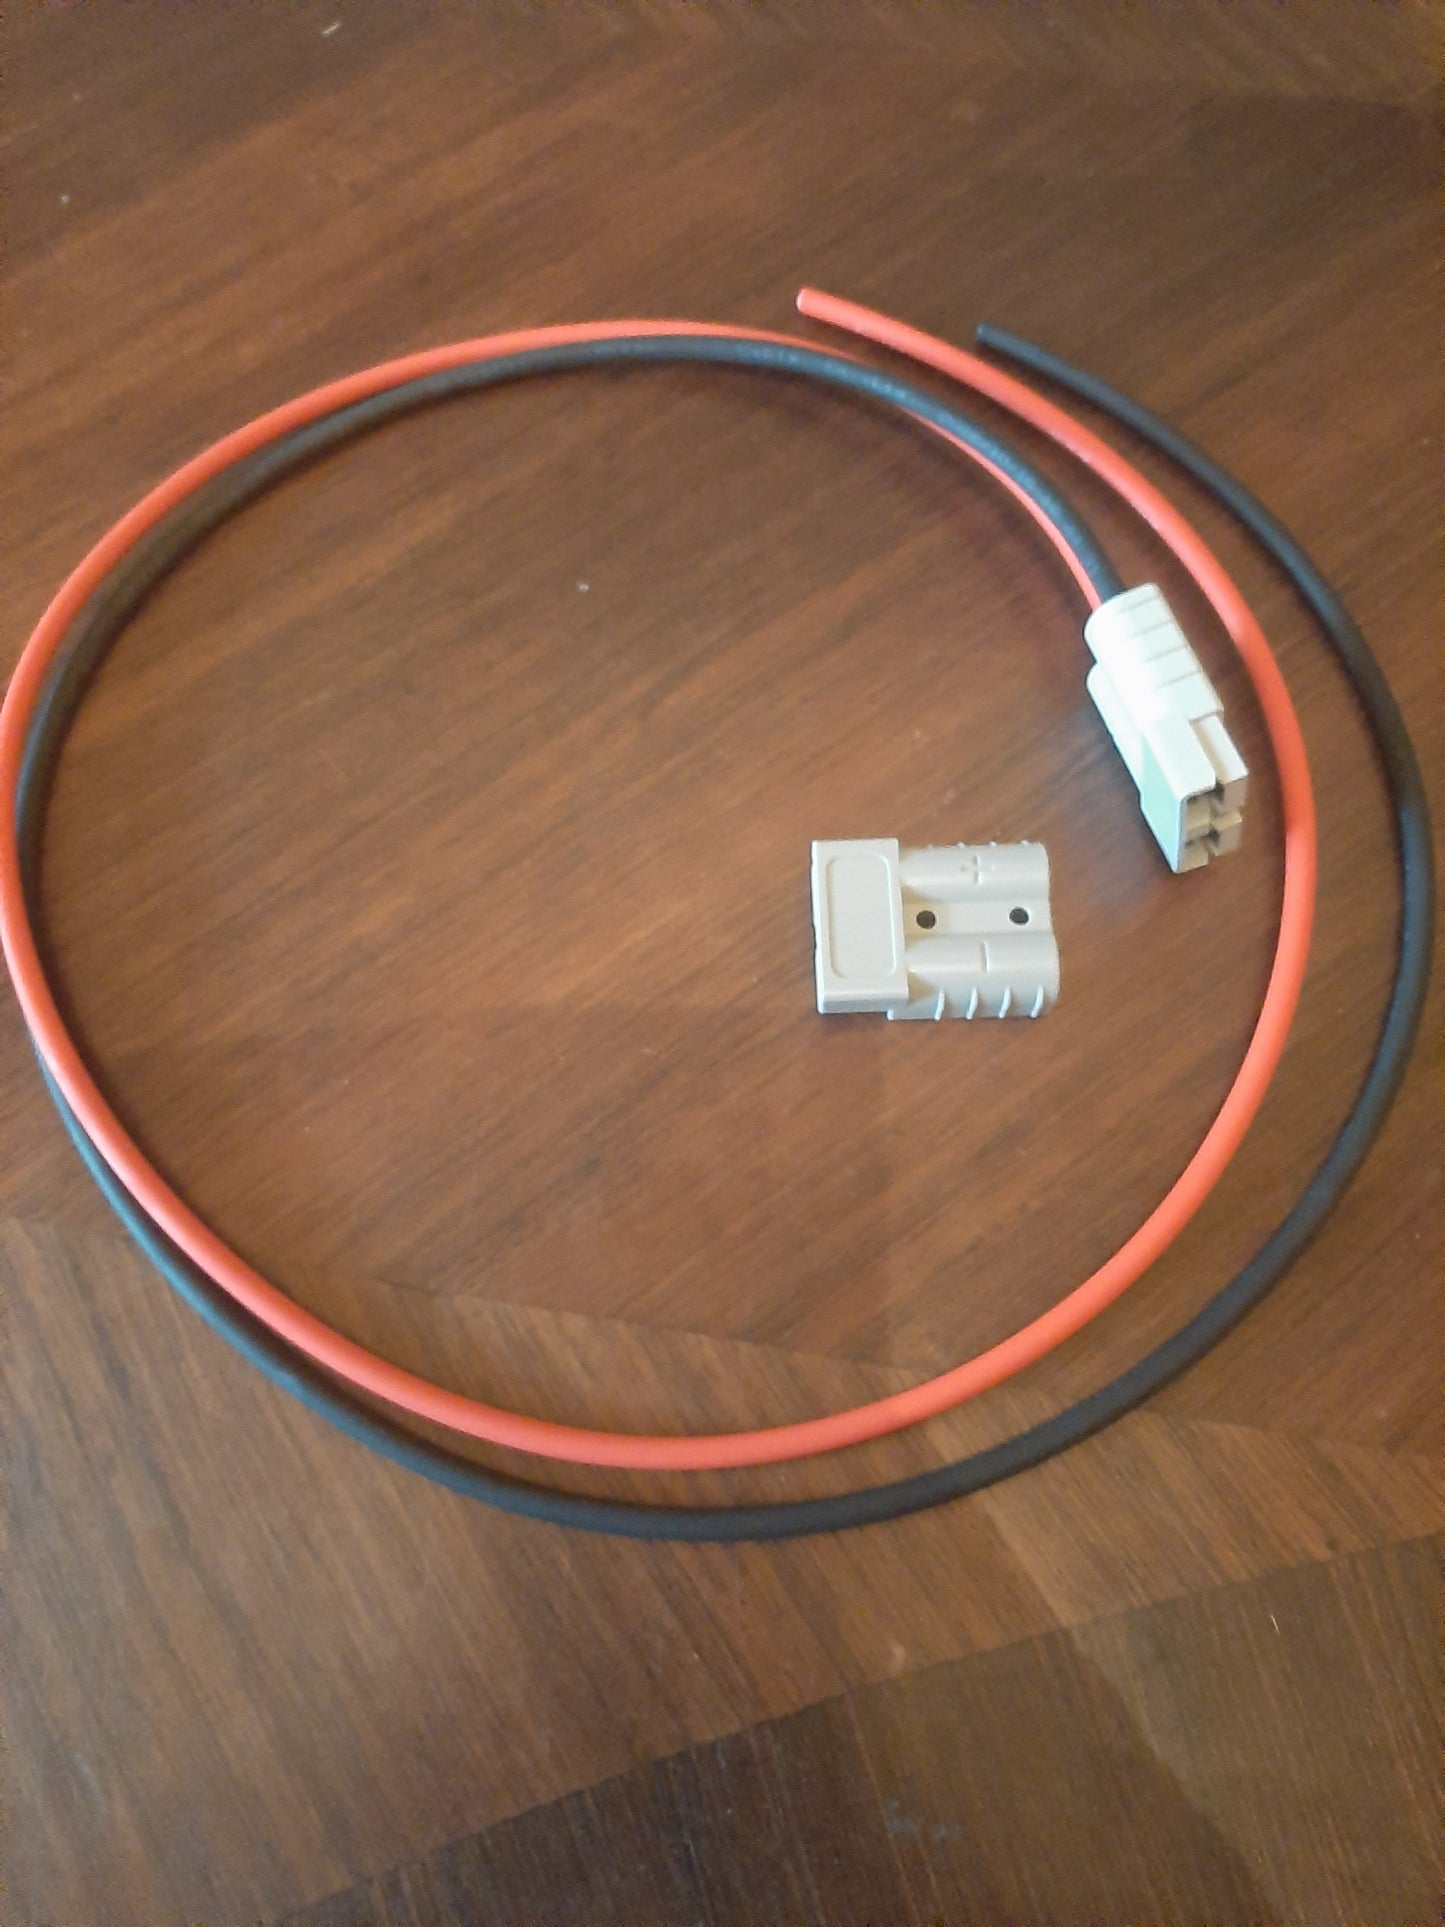 Cables 1 m avec fiche grise type fenwick 50 Amp plus une fiche